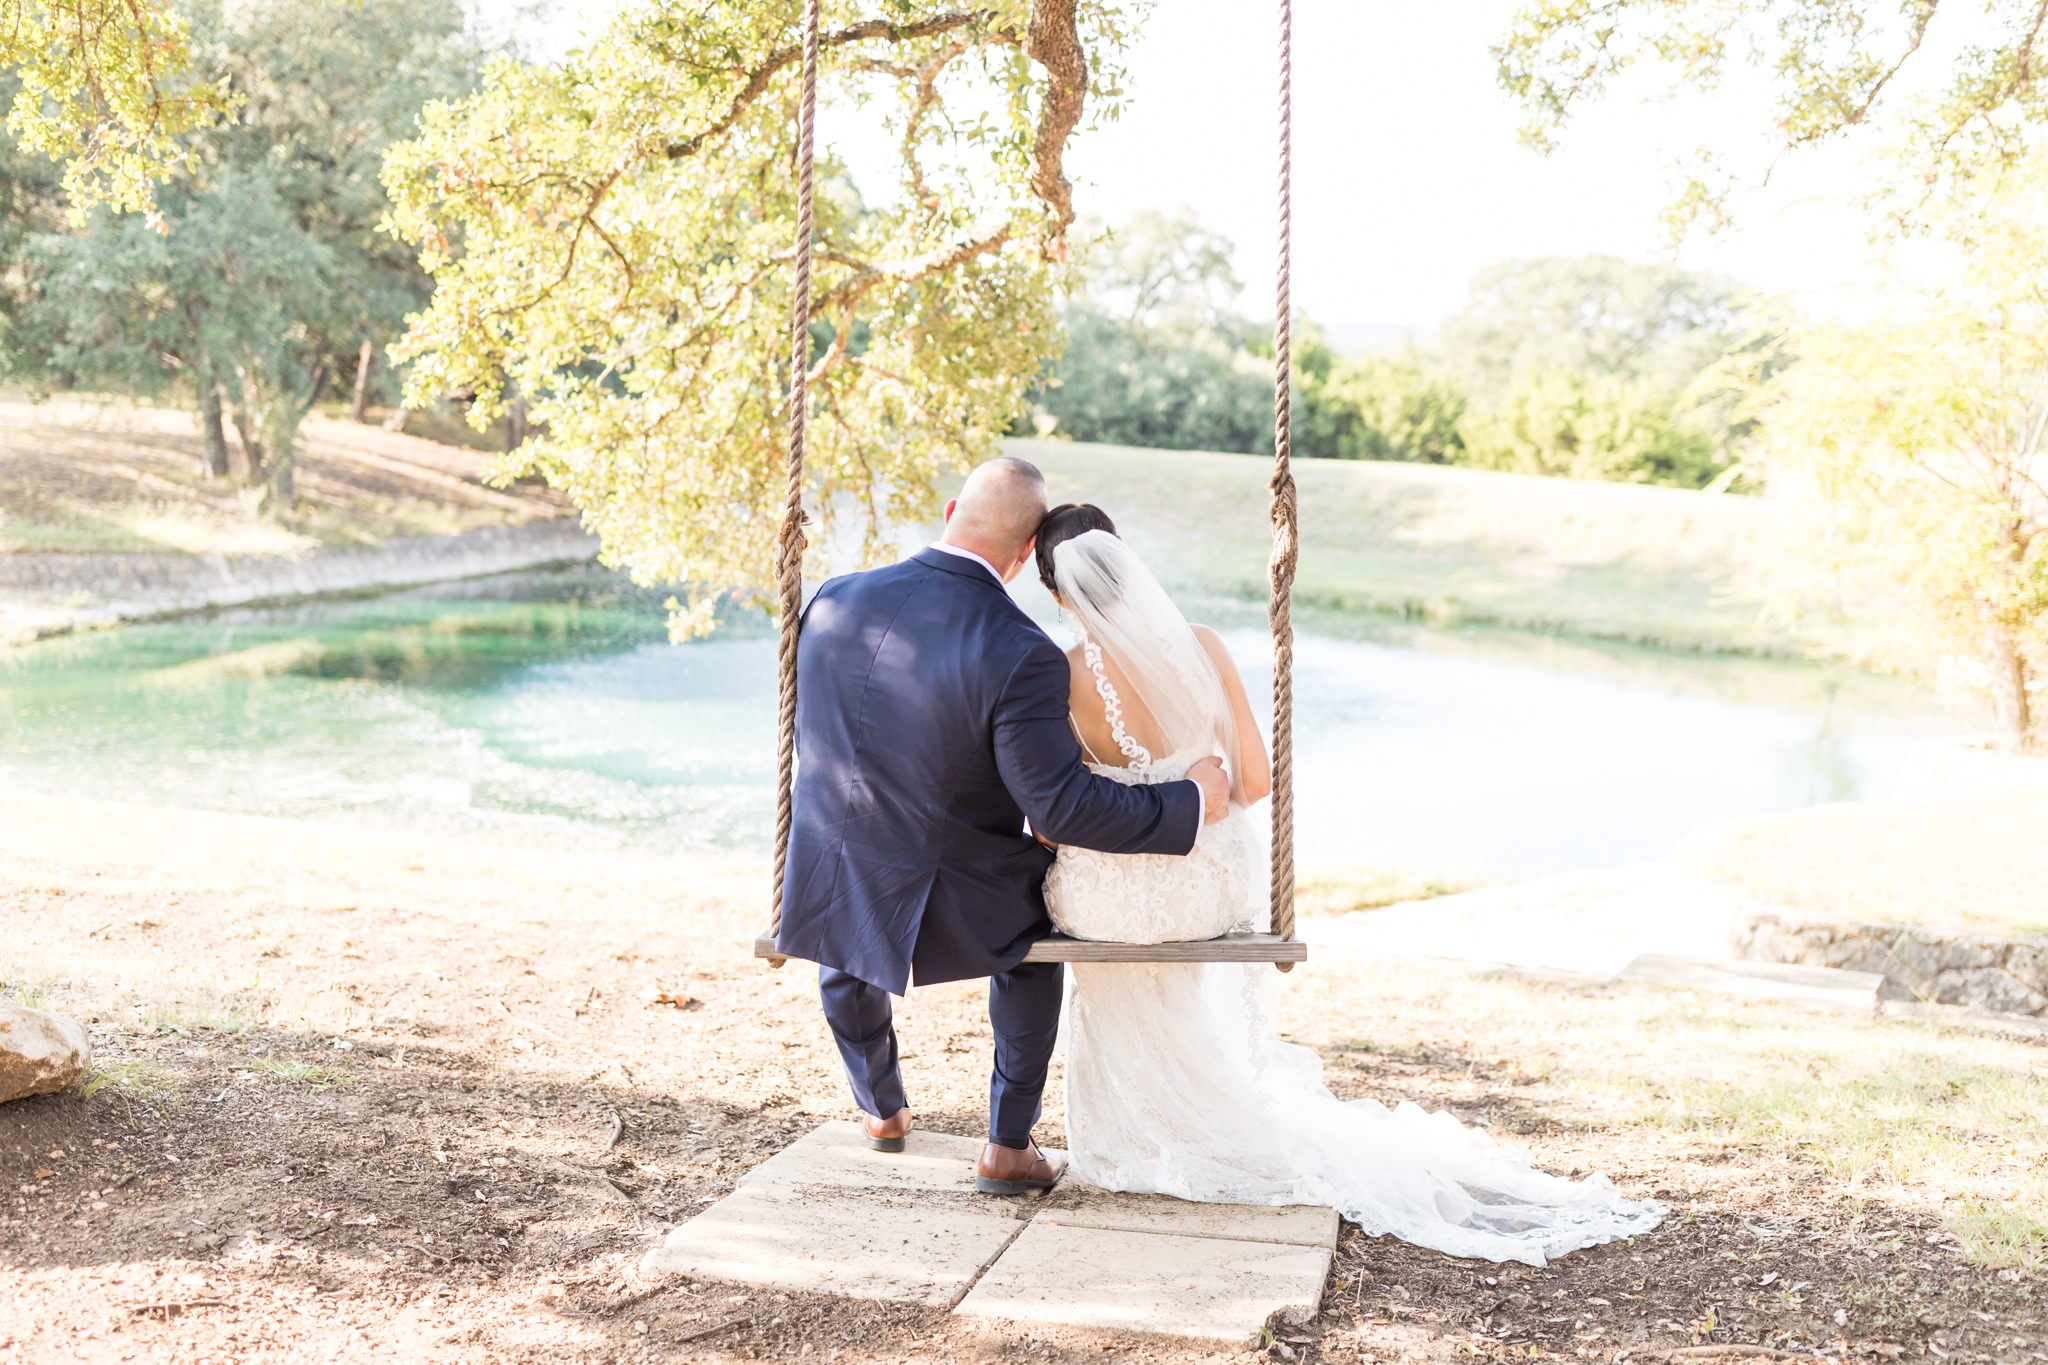 A Wedding at Kendall Point in Boerne, TX by Dawn Elizabeth Studios, Boerne Wedding Photographer